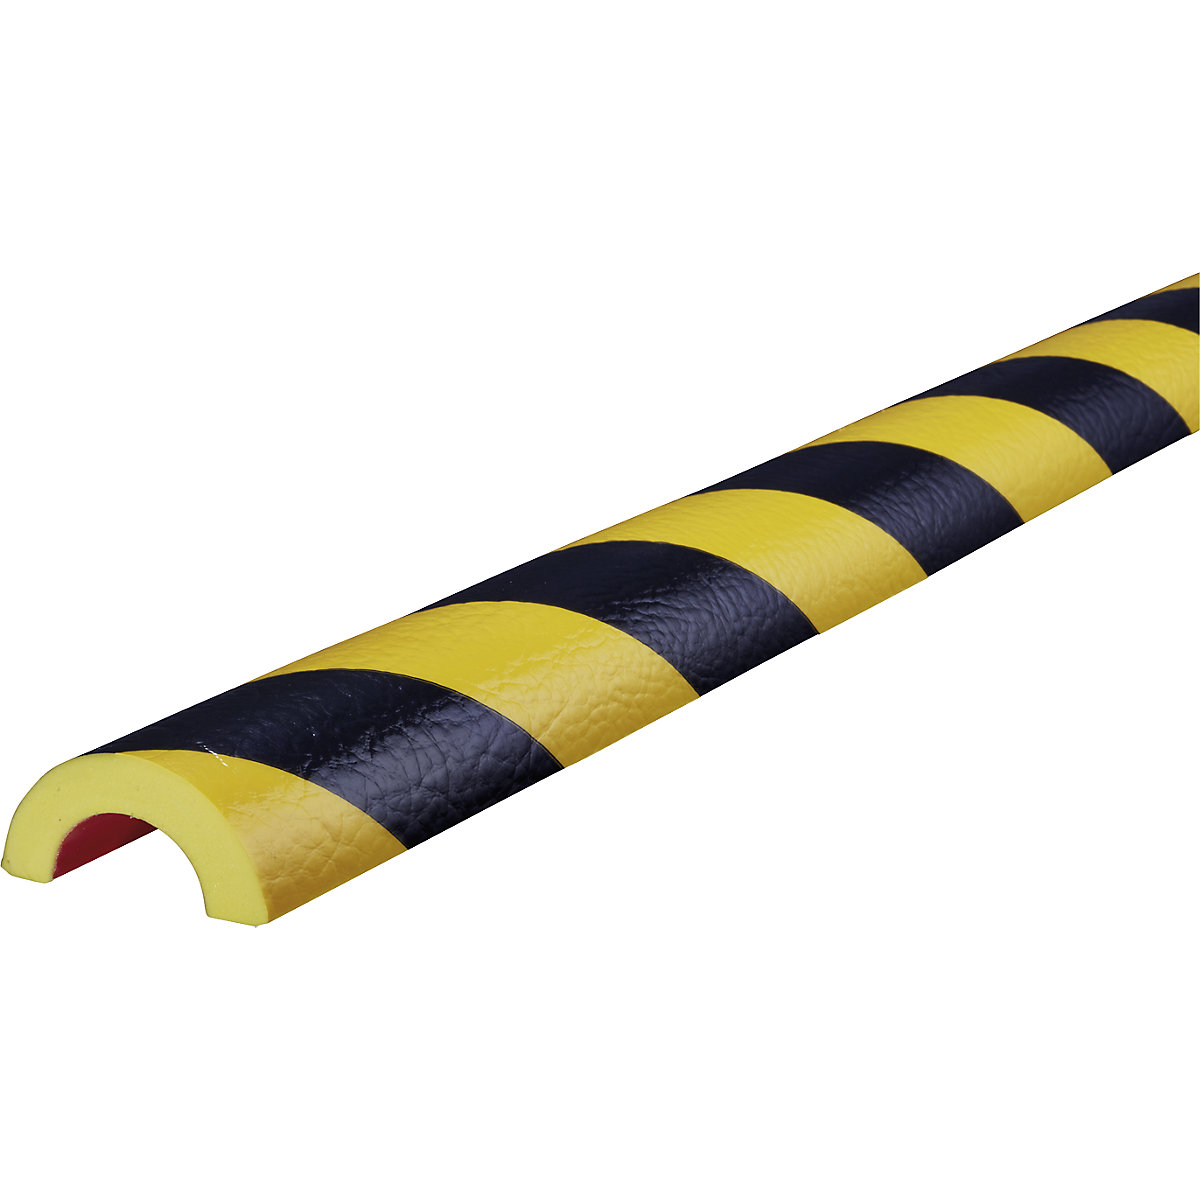 Ochrana trubek Knuffi® – SHG, typ R30, 1 role po 5 m, černá / žlutá-9